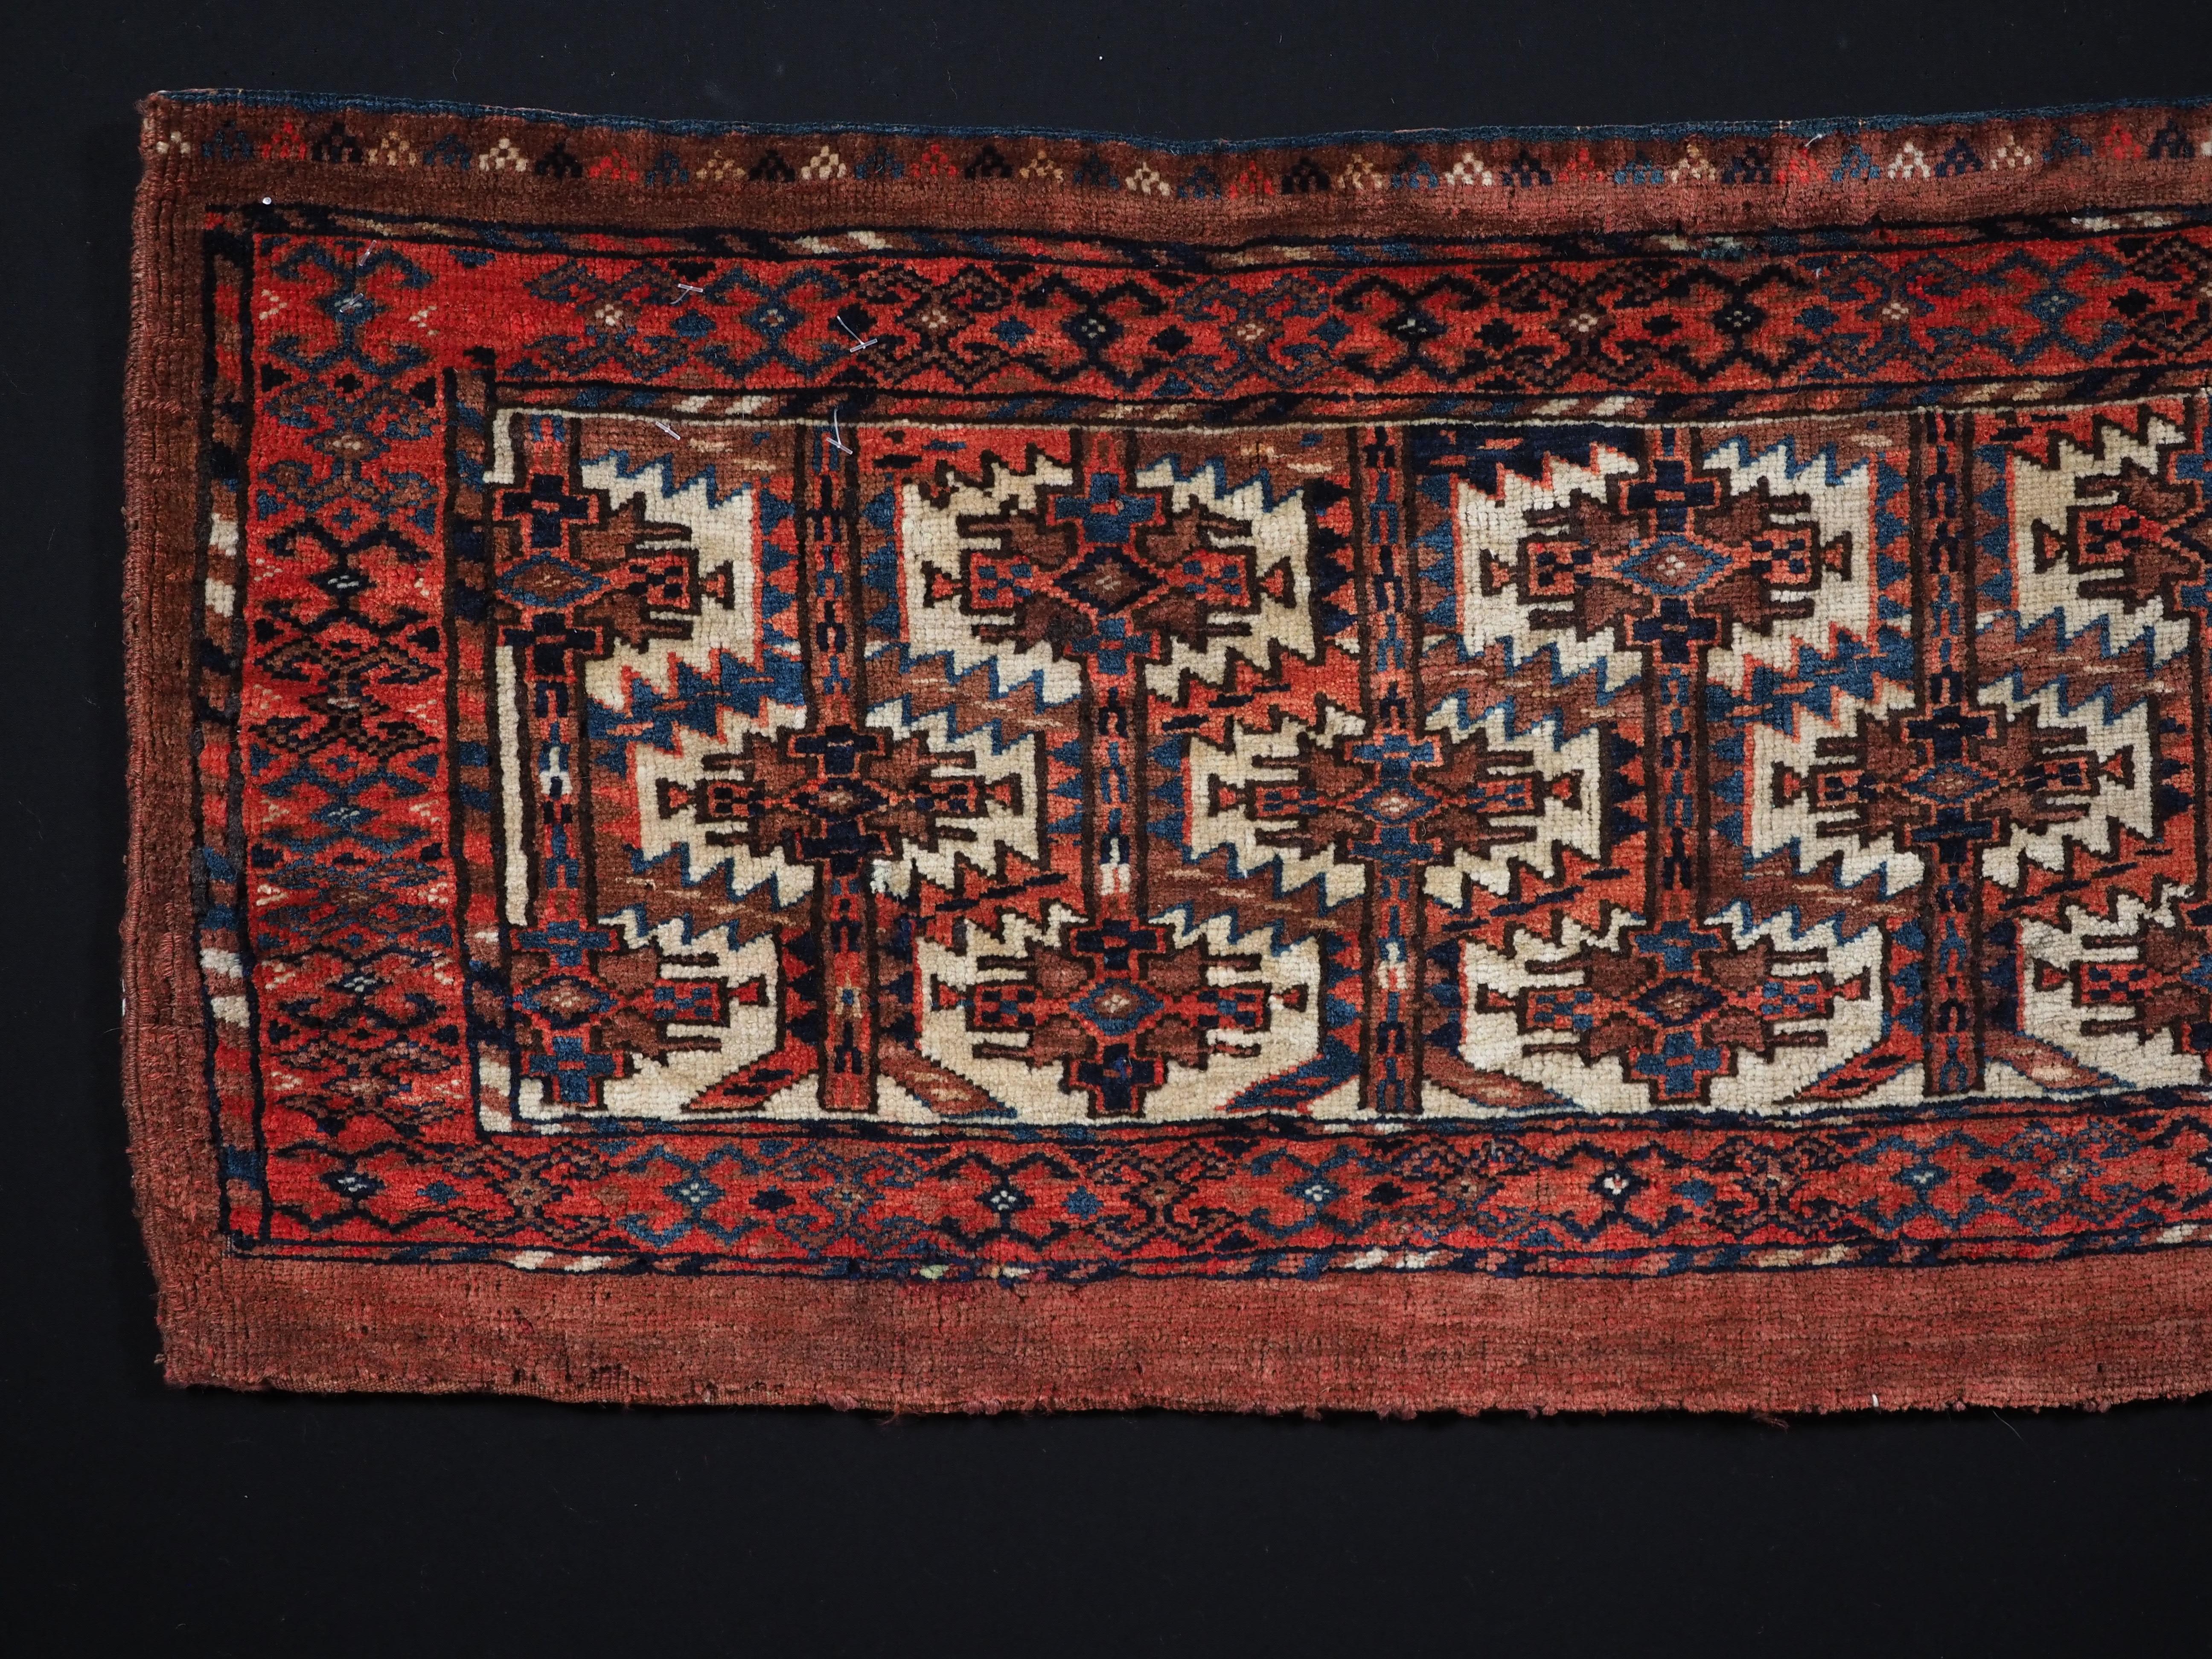 Größe: 3ft 3in x 1ft 4in (100 x 41cm)

Antike Turkmenische Yomut-Torba aus Turkmen mit Gitterdesign.

Um 1880.

Torba sind flache Wandsäcke, die vor allem in Zelten oder Jurten zur Aufbewahrung von persönlichen Gegenständen verwendet werden, aber